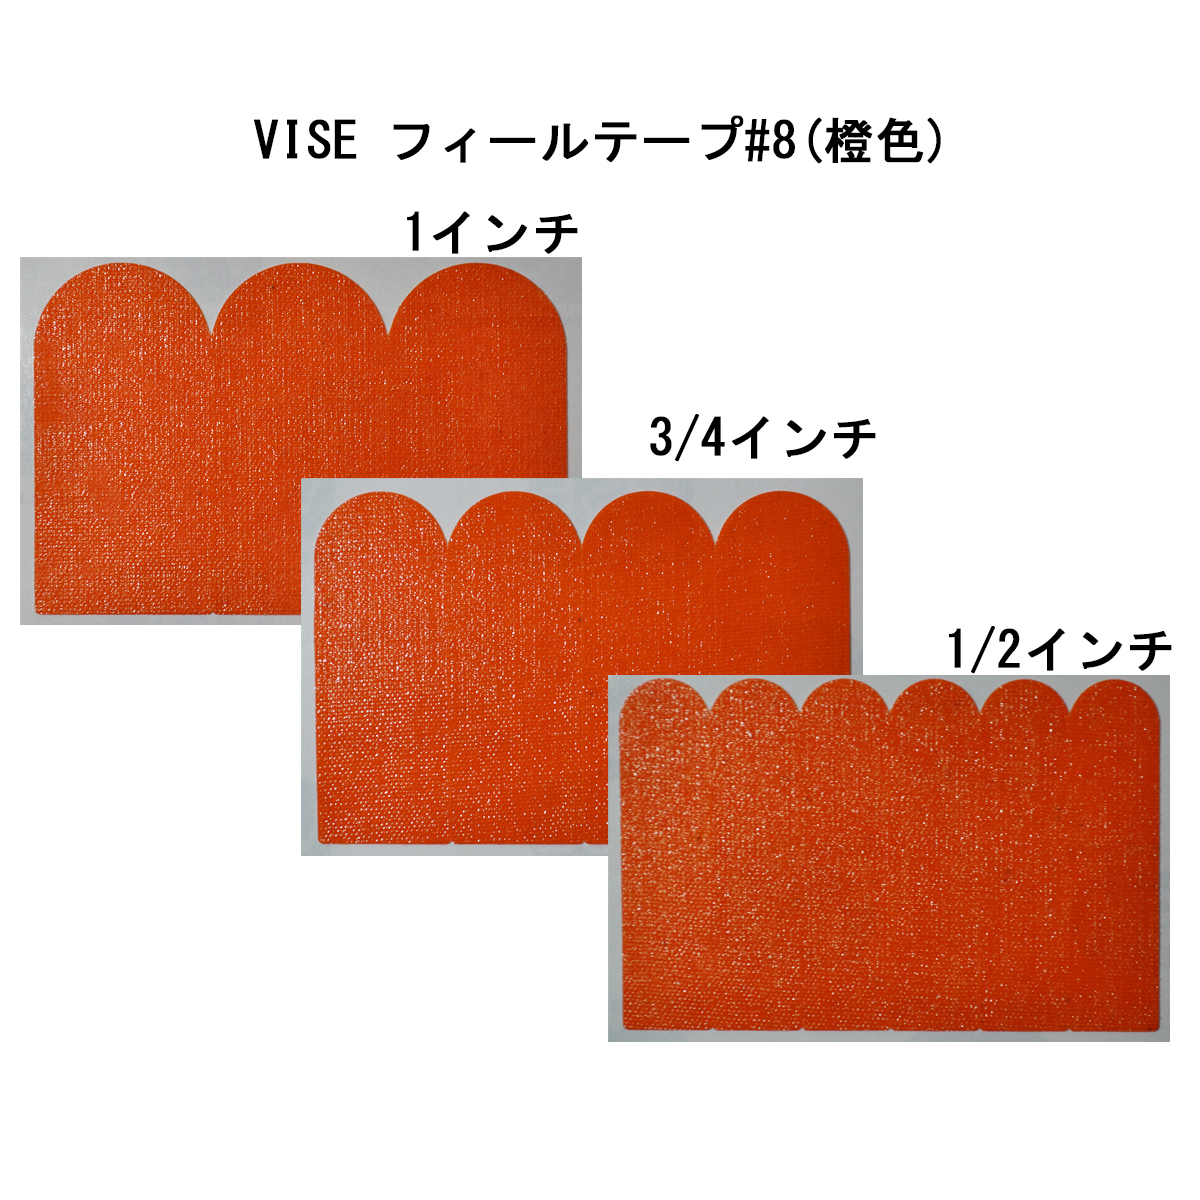 【12袋セット】VISE フィールテープ#8(橙色)